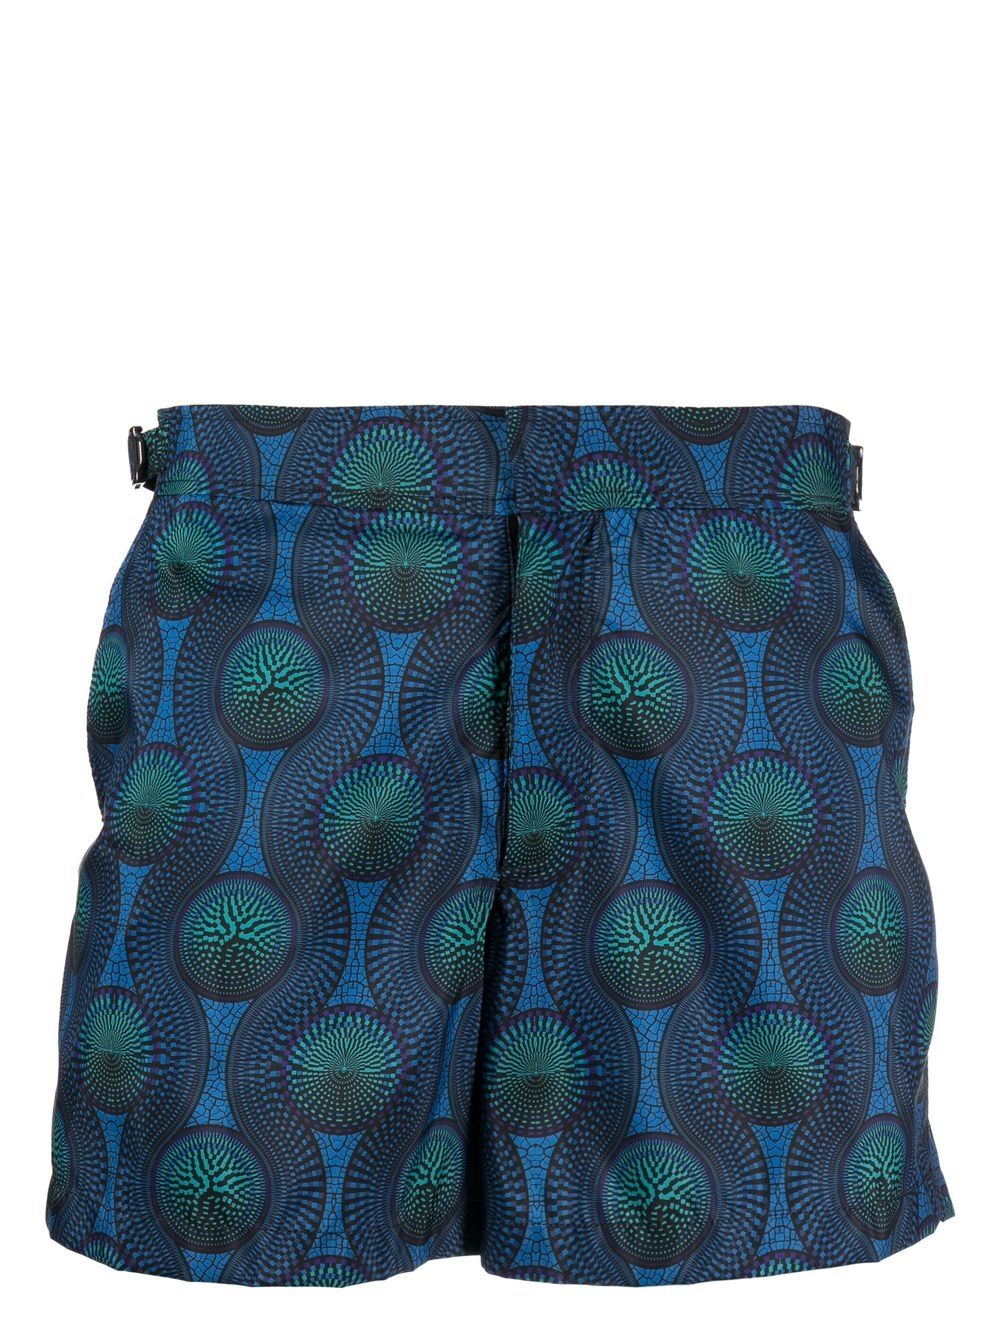 mosaic-print swim shorts